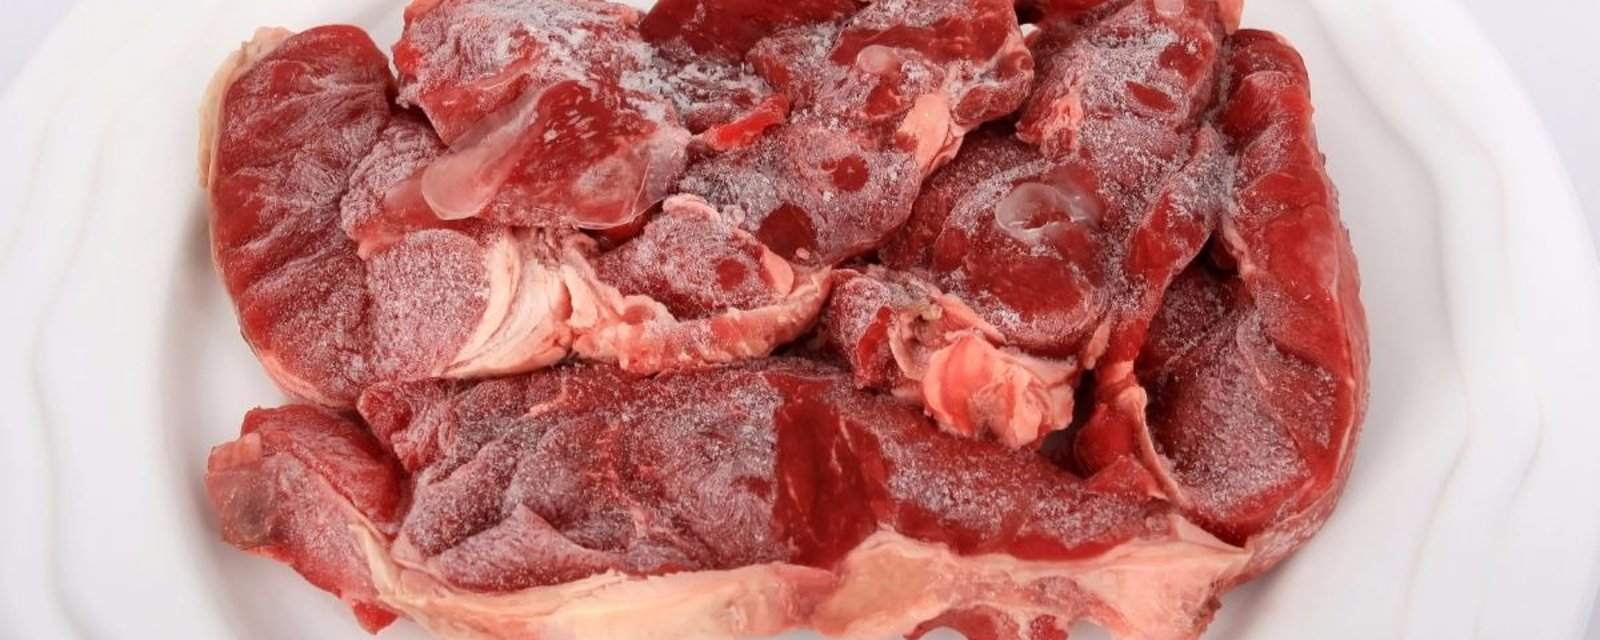 Faites dégeler votre viande en quelques minutes seulement avec cette méthode sans danger!